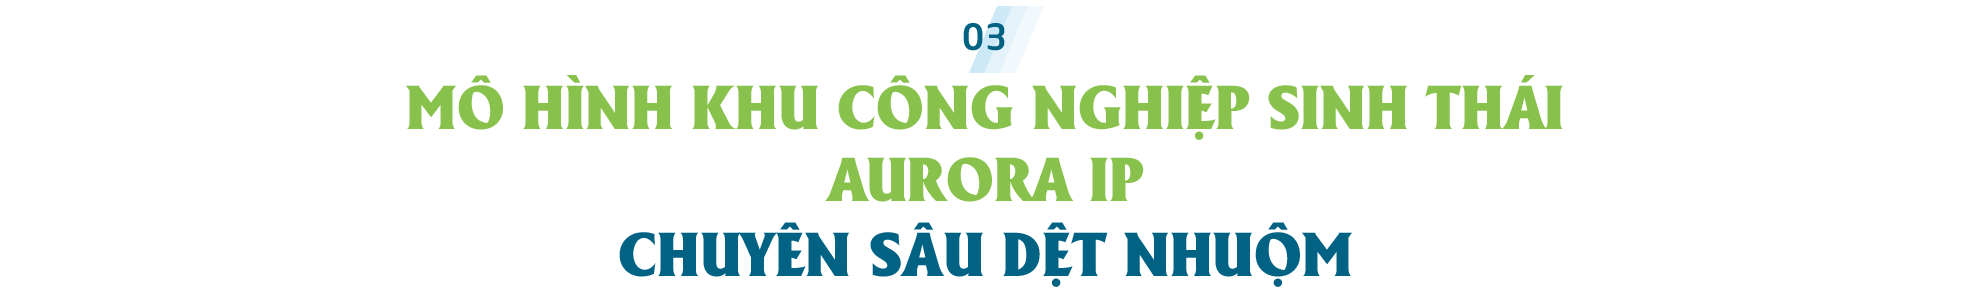 Giải bài toán đầu vào của ngành dệt may Việt Nam: Nhìn từ định hướng chiến lược phát triển Khu công nghiệp Aurora IP tỉnh Nam Định - Ảnh 8.